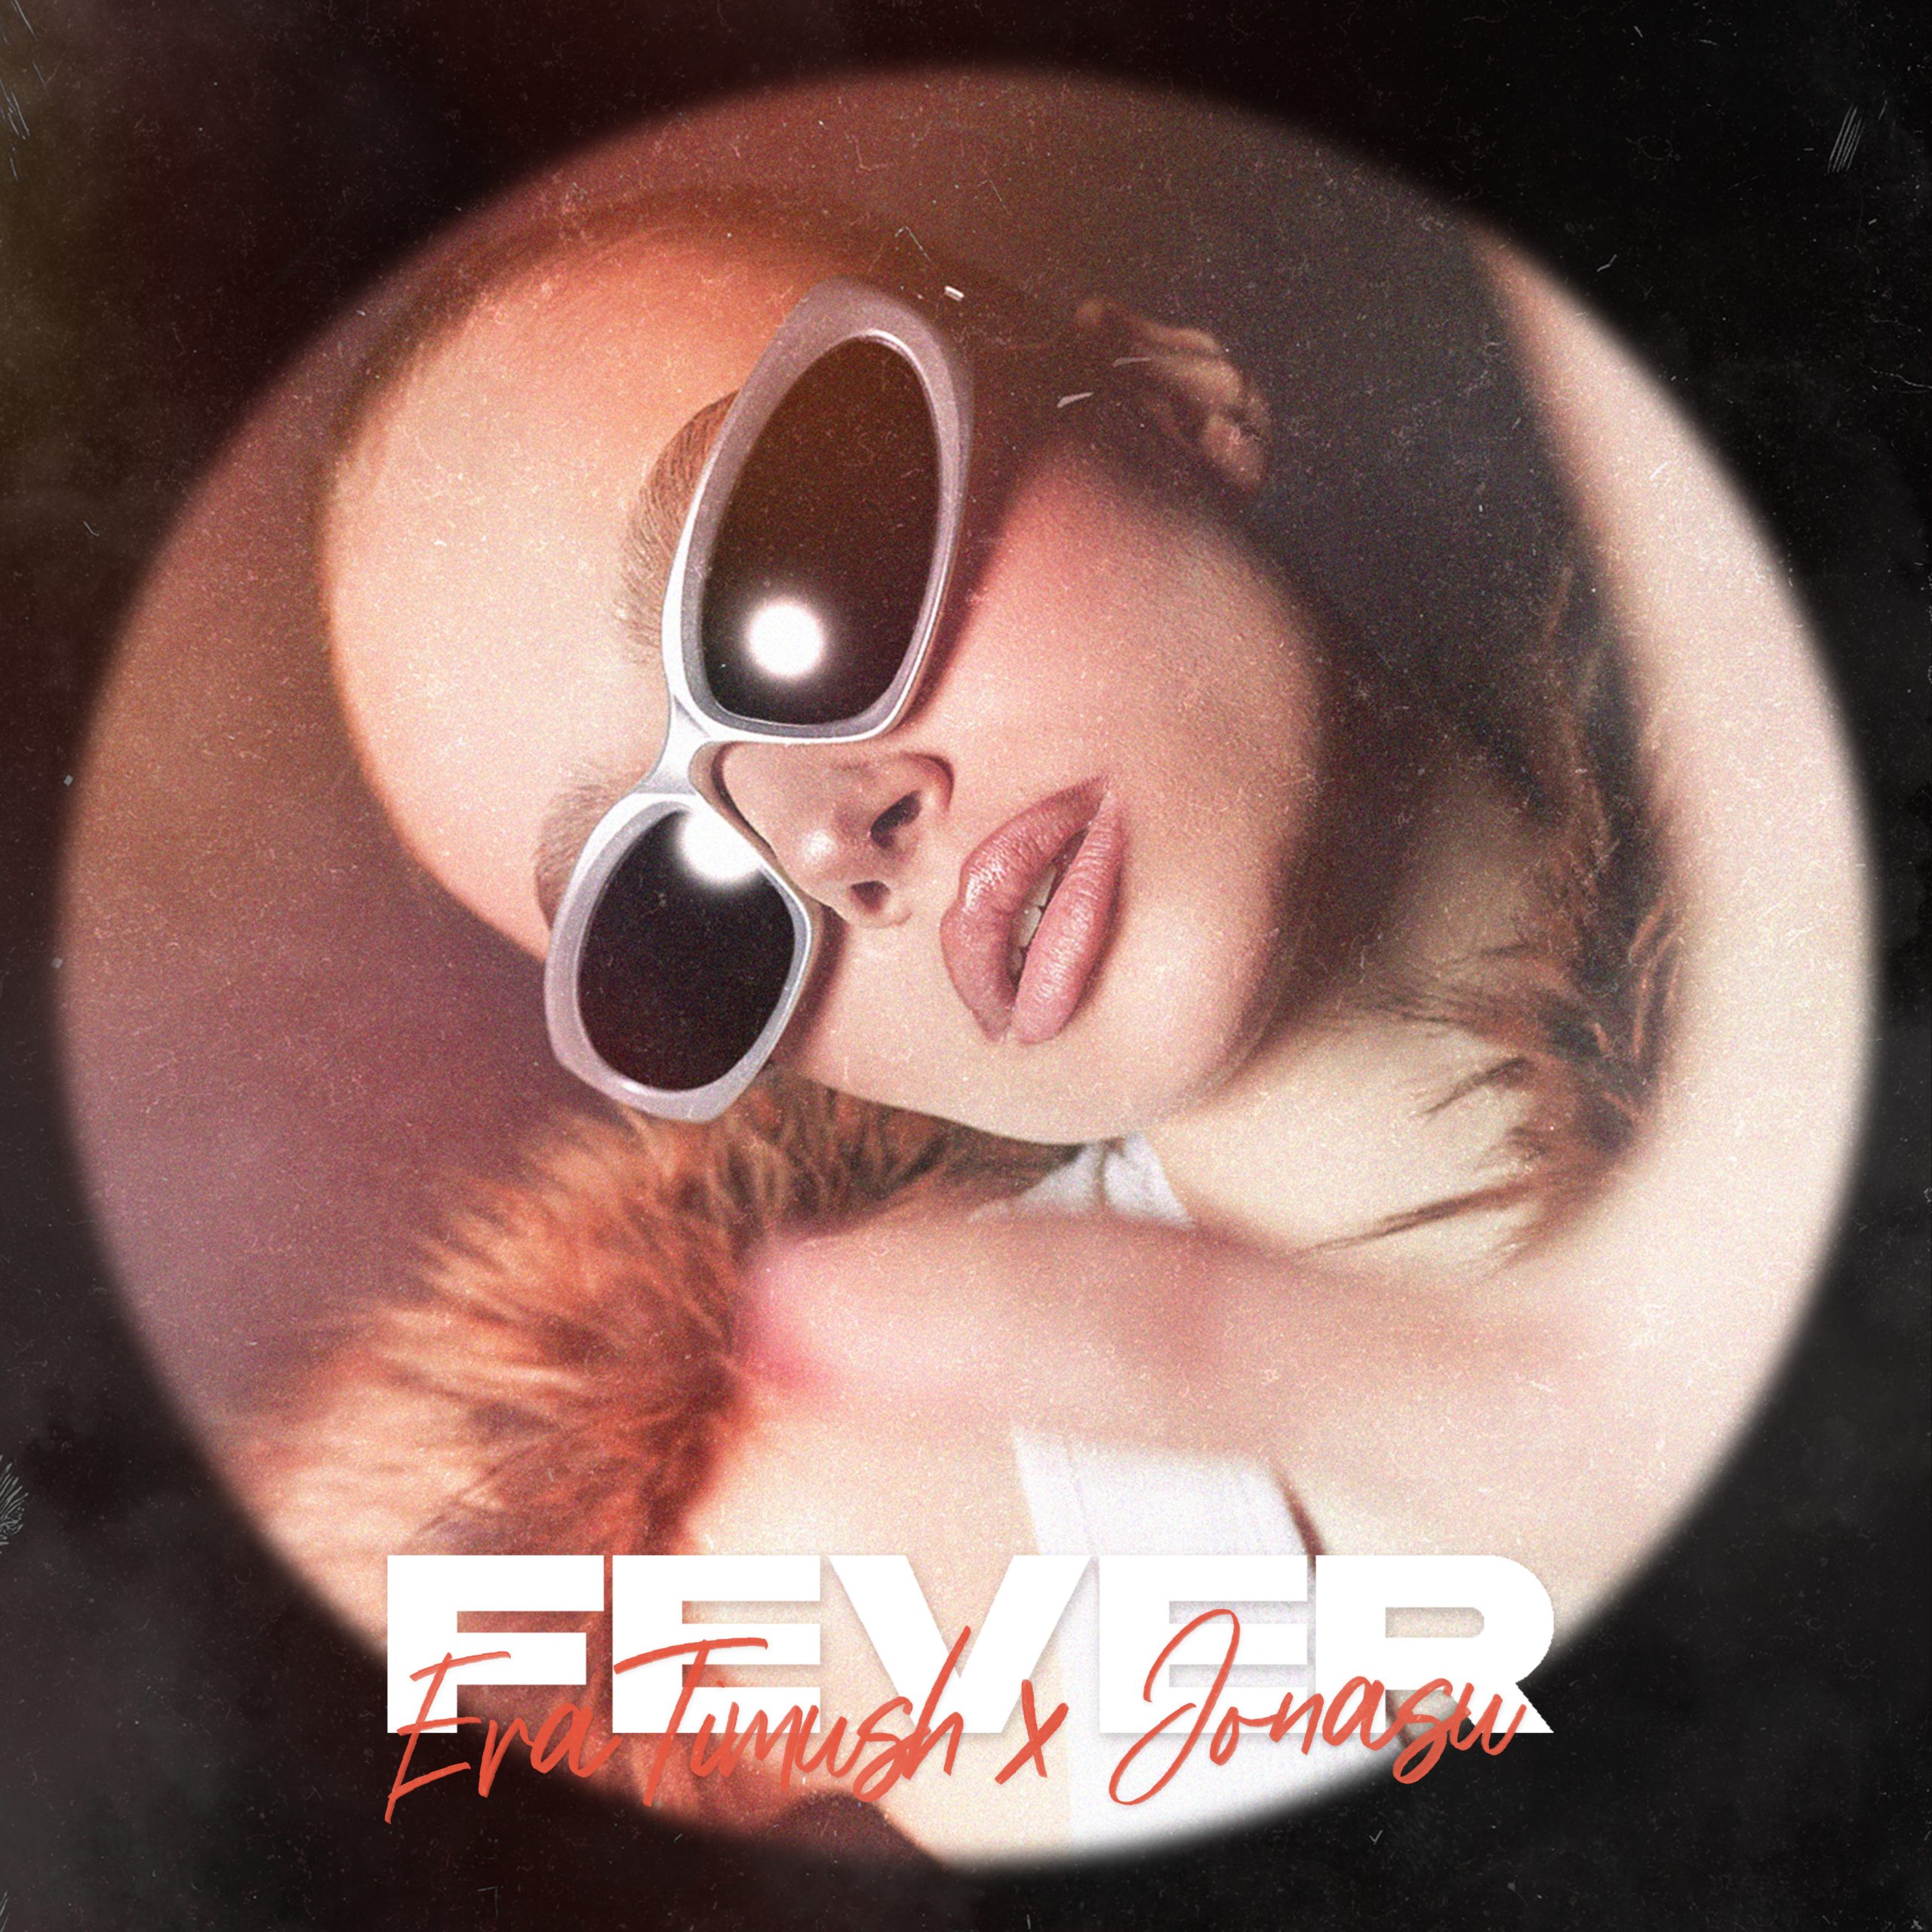 Party Mode On: Eva Timush x Jonasu – “Fever”